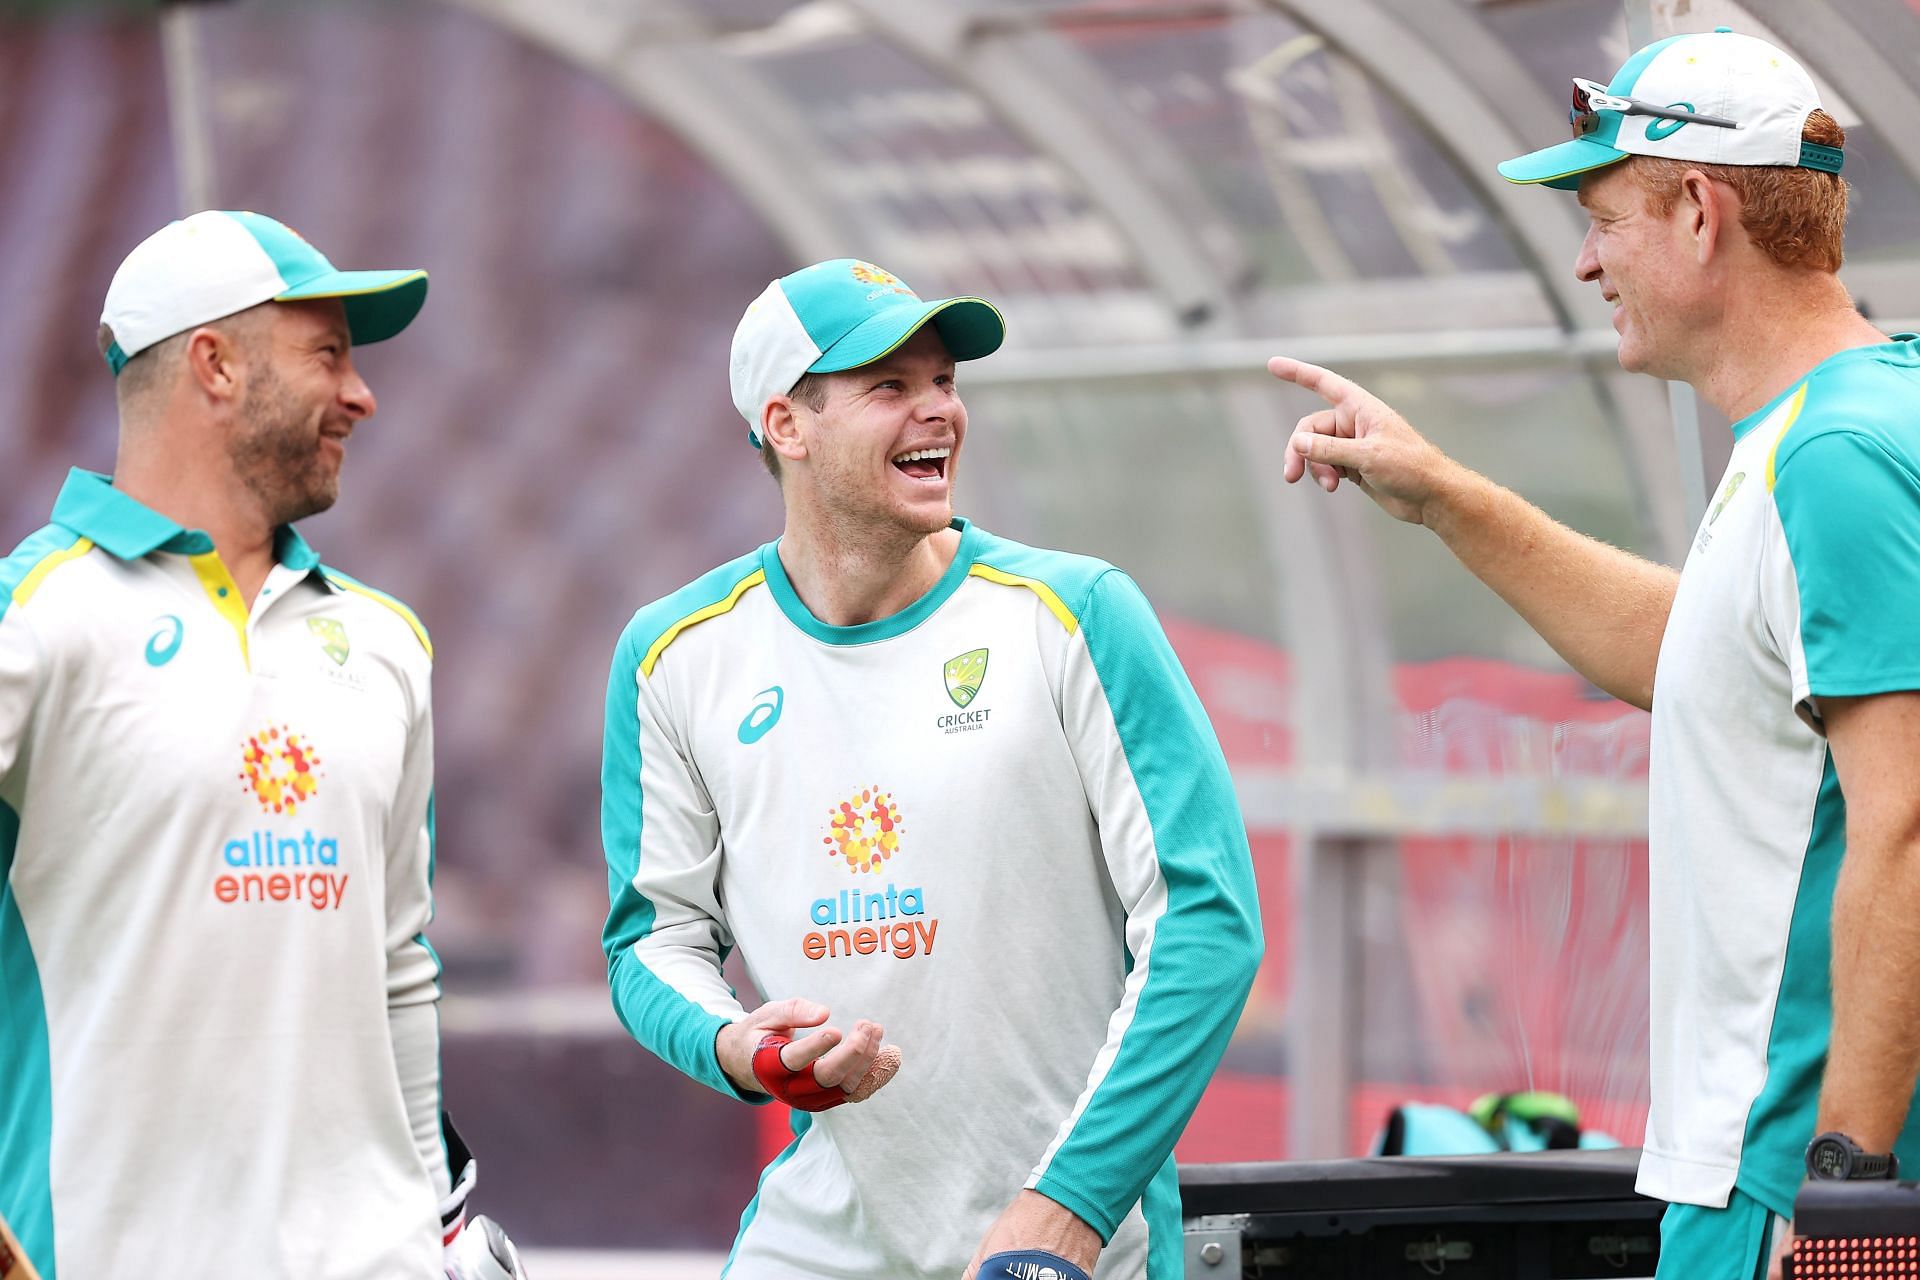 ऑस्ट्रेलिया की टीम दक्षिण अफ्रीका में टेस्ट सीरीज खेलने वाली थी